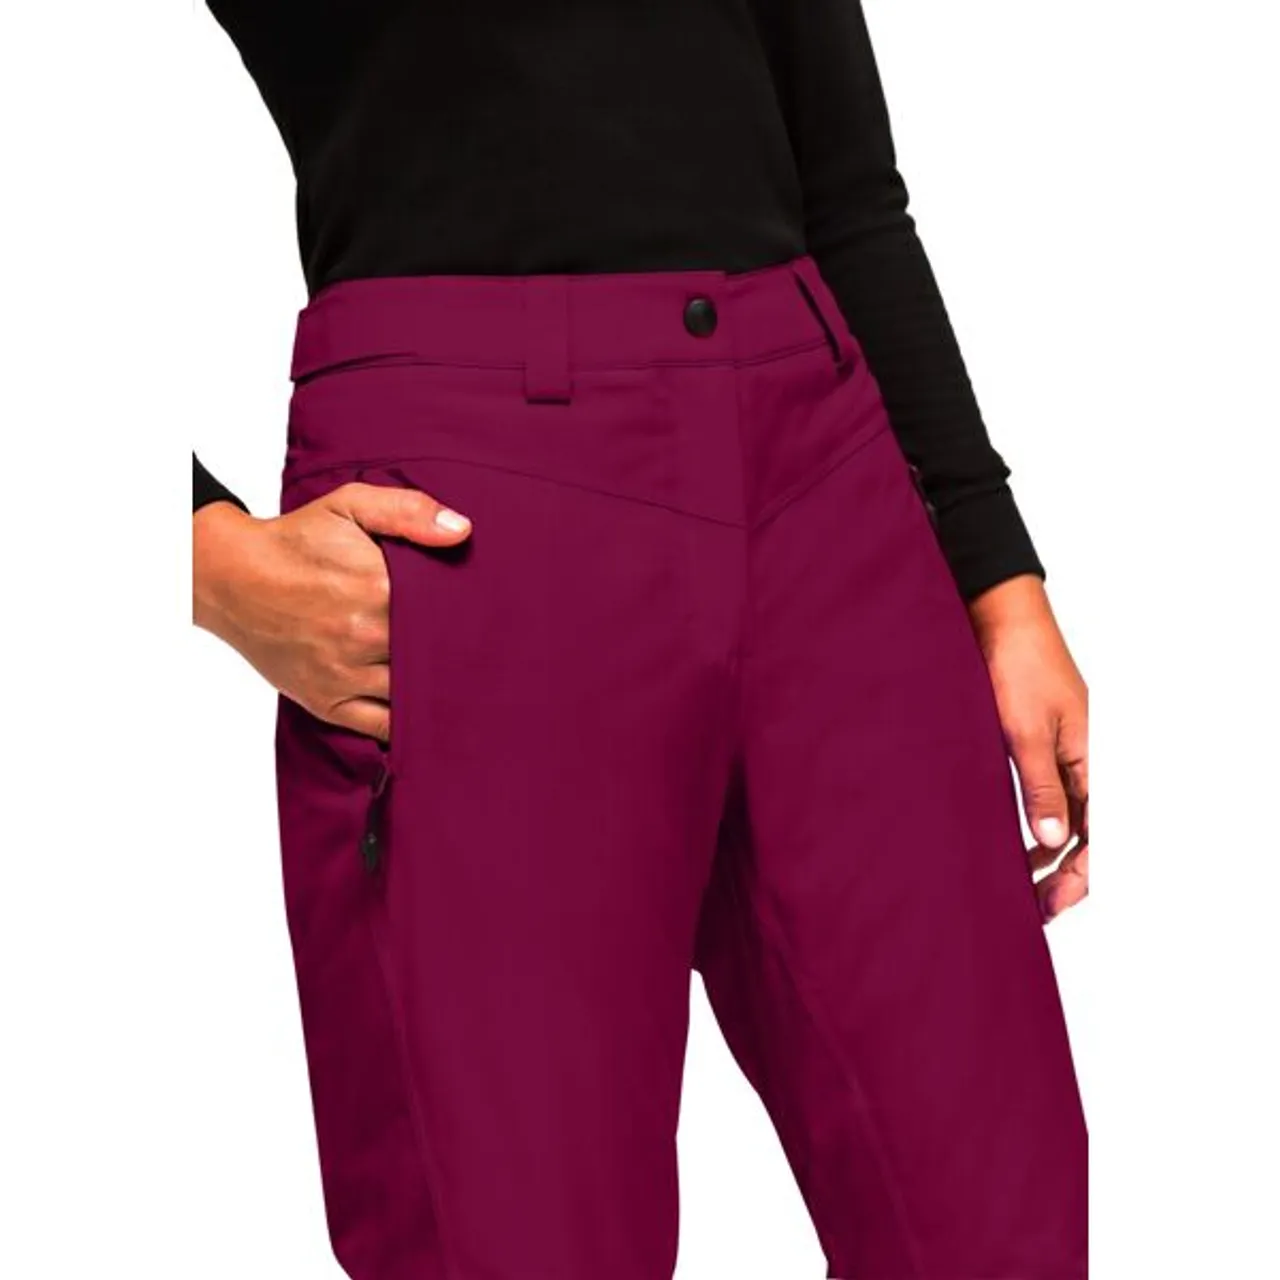 Skihose MAIER SPORTS "Ronka" Gr. 42, Normalgrößen, pink (magenta) Damen Hosen Sporthosen Warm, wasserdicht, elastisch, perfekte Passform